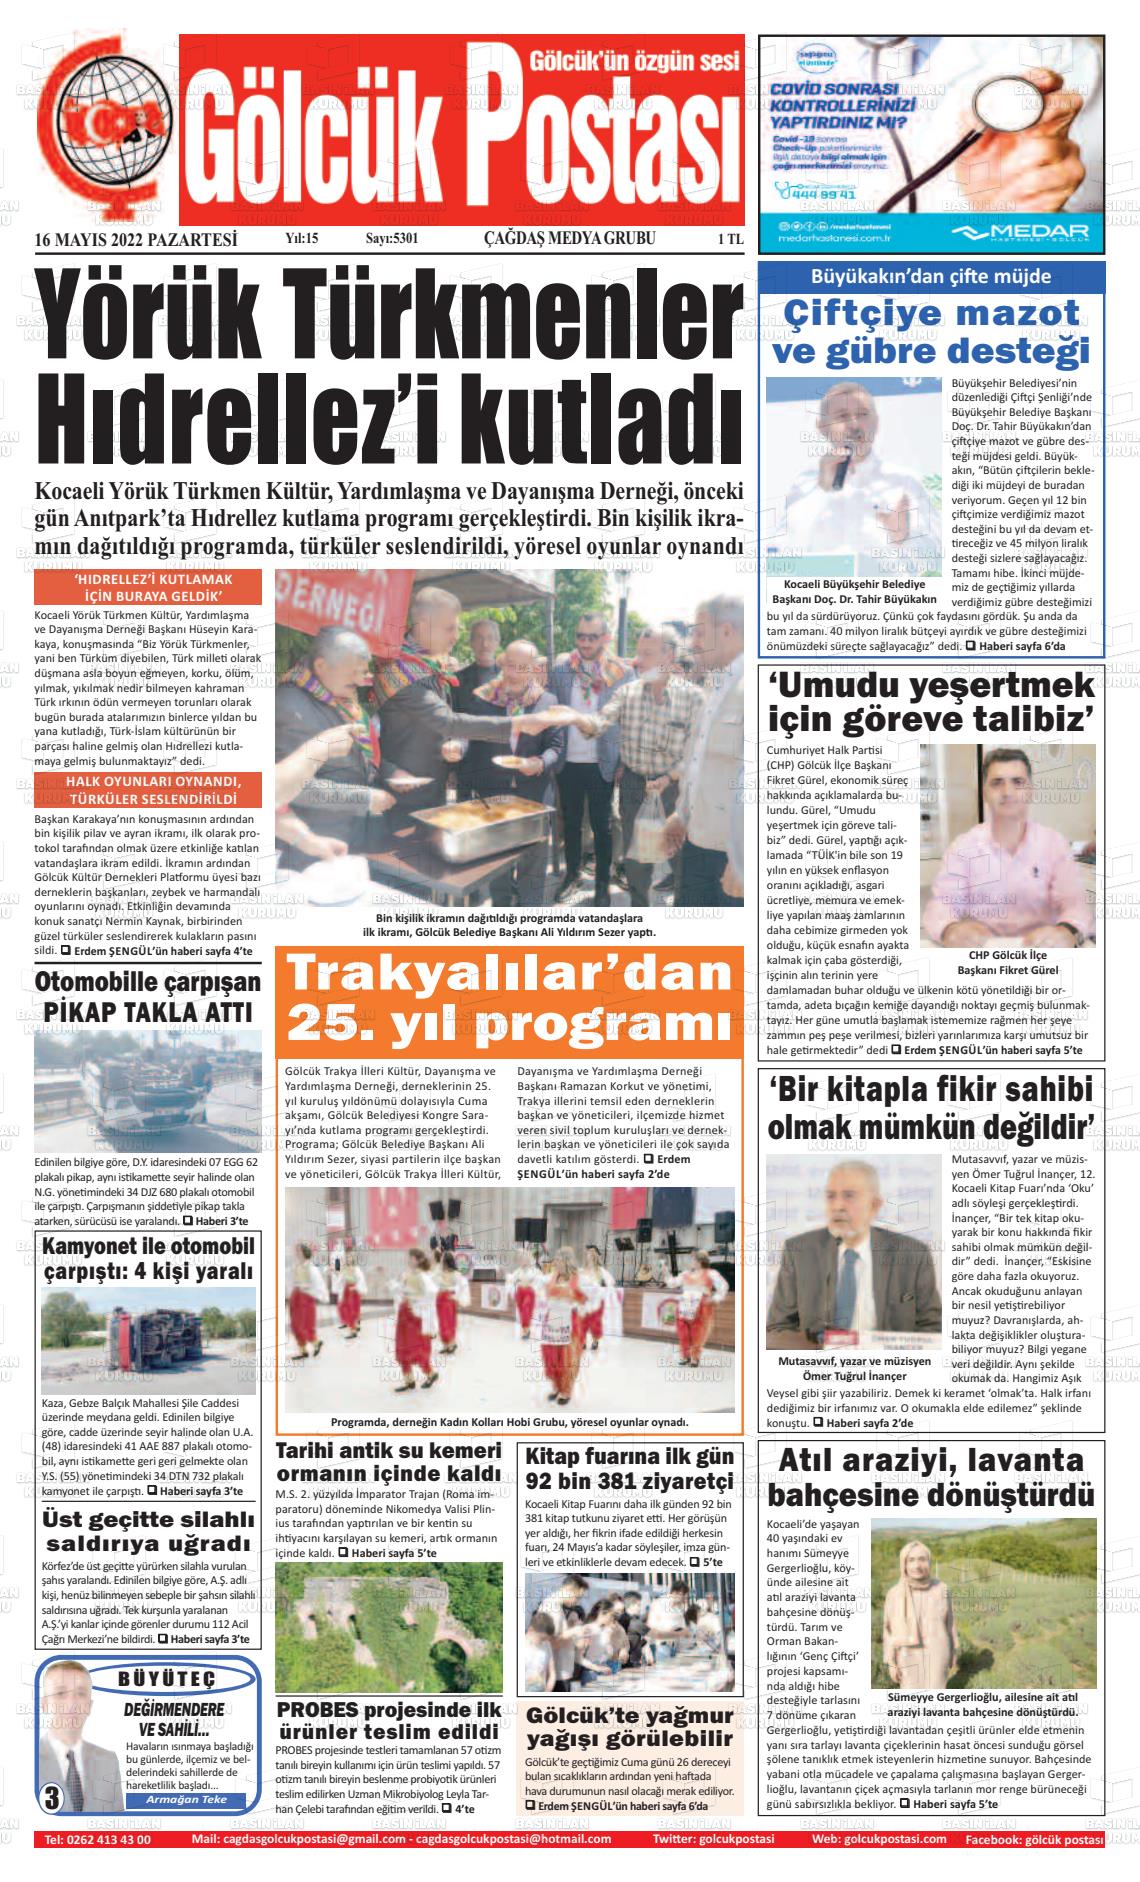 16 Mayıs 2022 Gölcük Postasi Gazete Manşeti